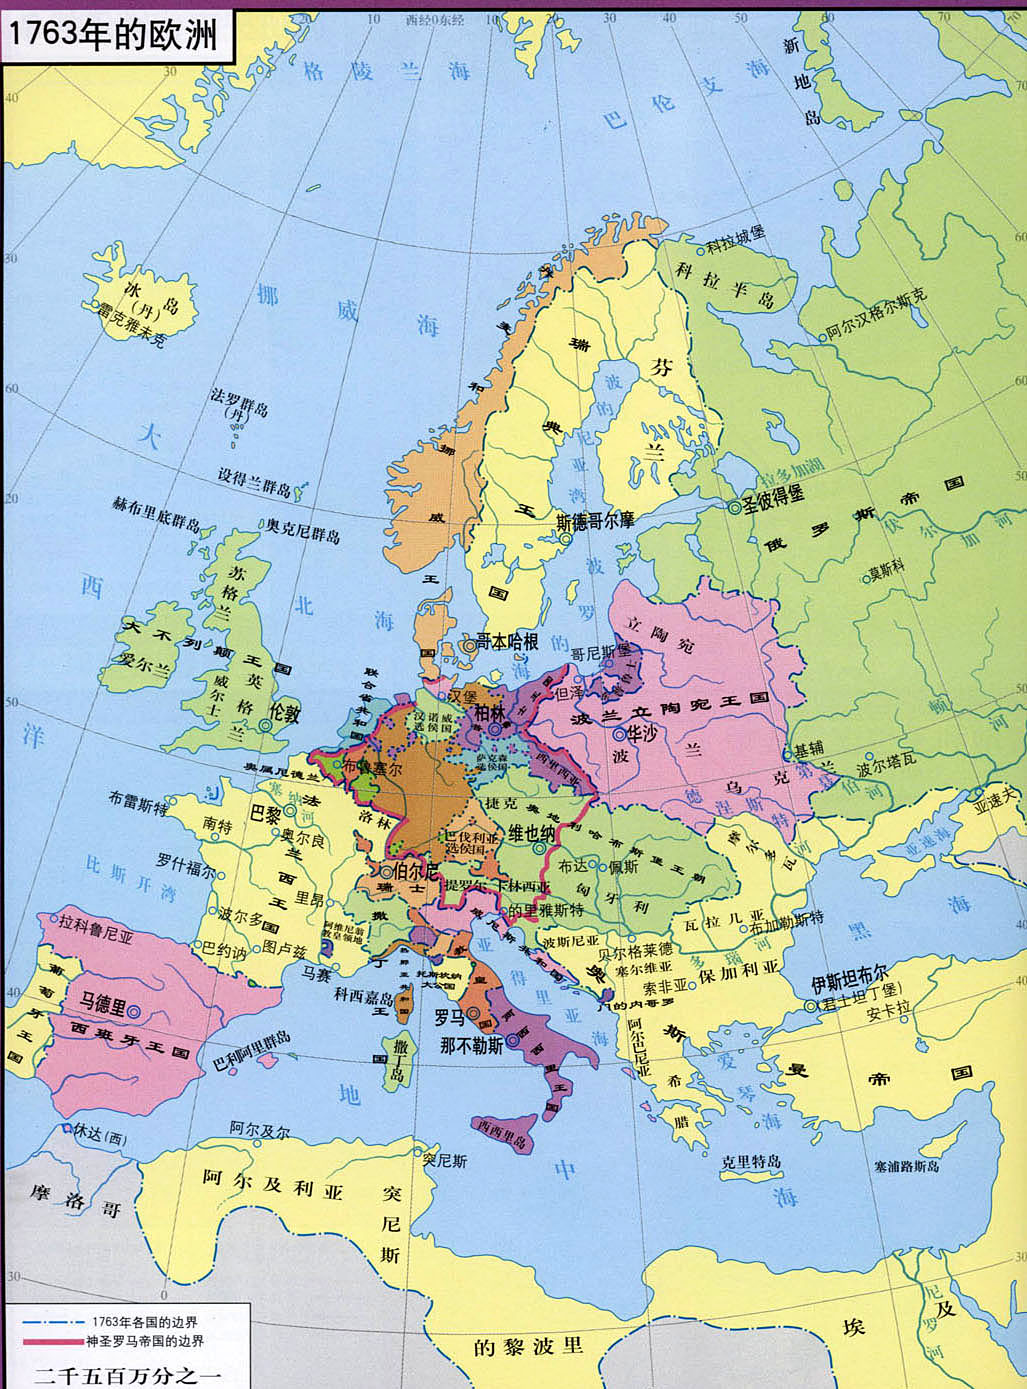 1494年欧洲地图图片